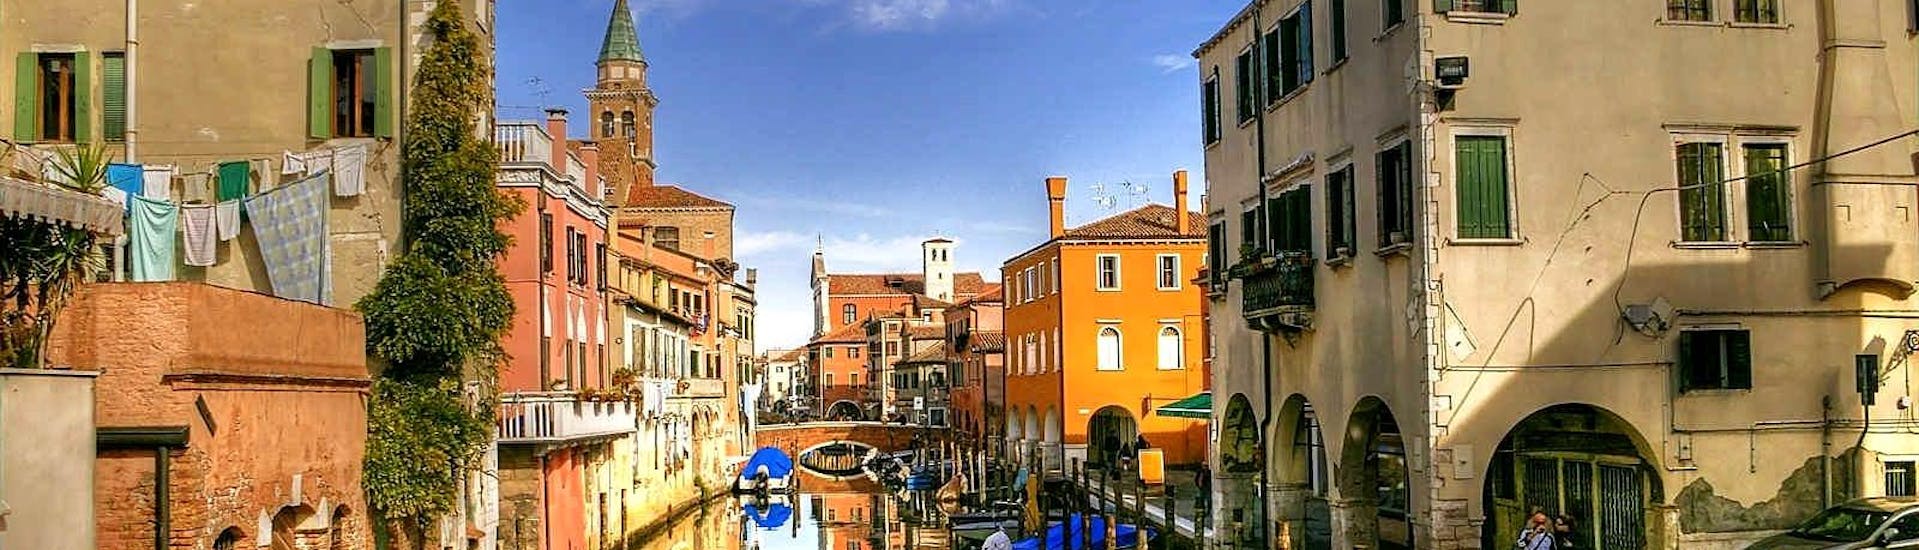 Tour en gondole partagée à Venise le long du Grand Canal.